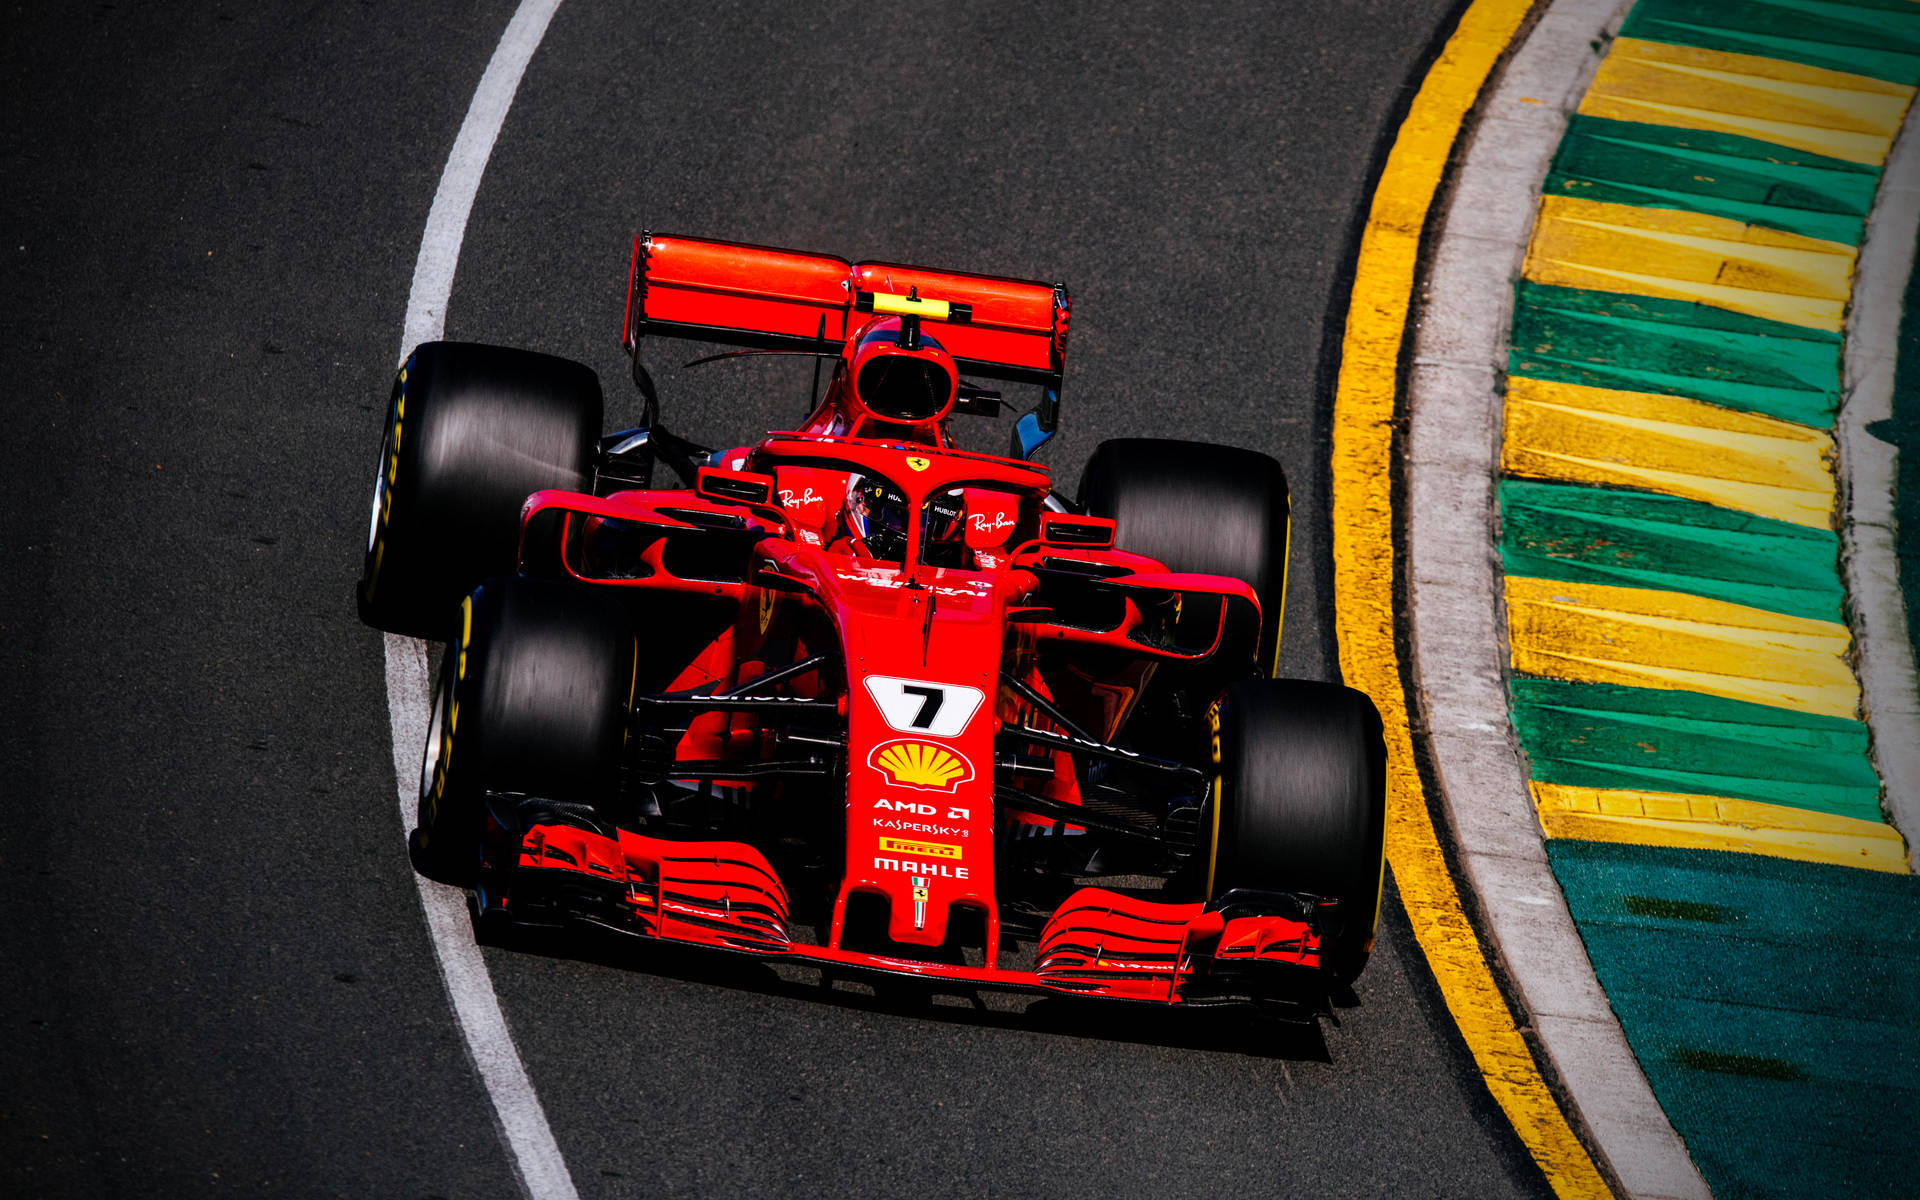 Ferrari F1 2018 And Curbs Wallpaper